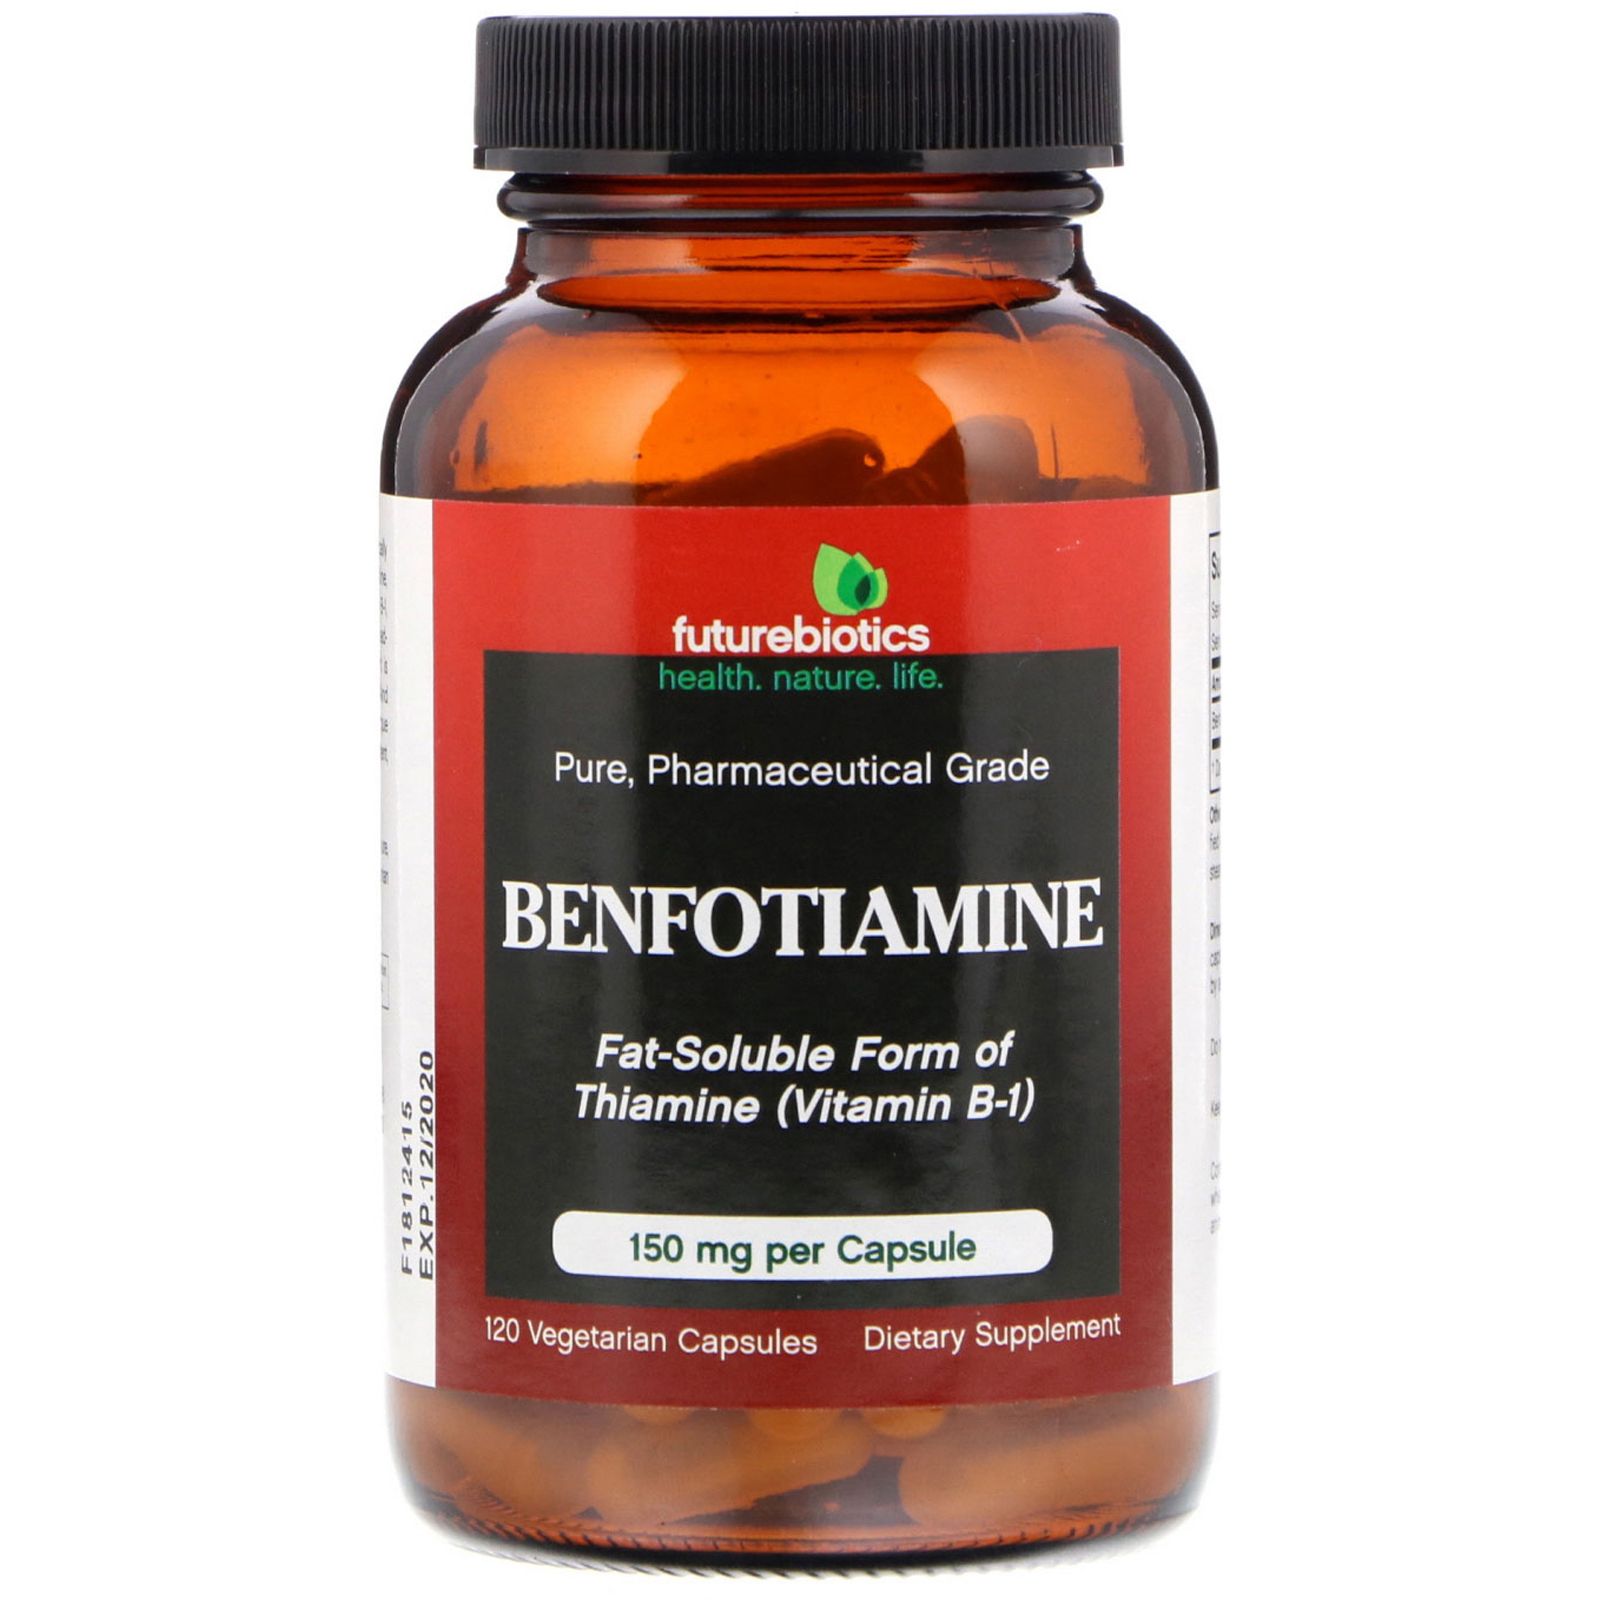 FutureBiotics Benfotiamine Fat-Soluble Form of Thiamine(Vitamin B-1) 120 Vegetarian Capsules